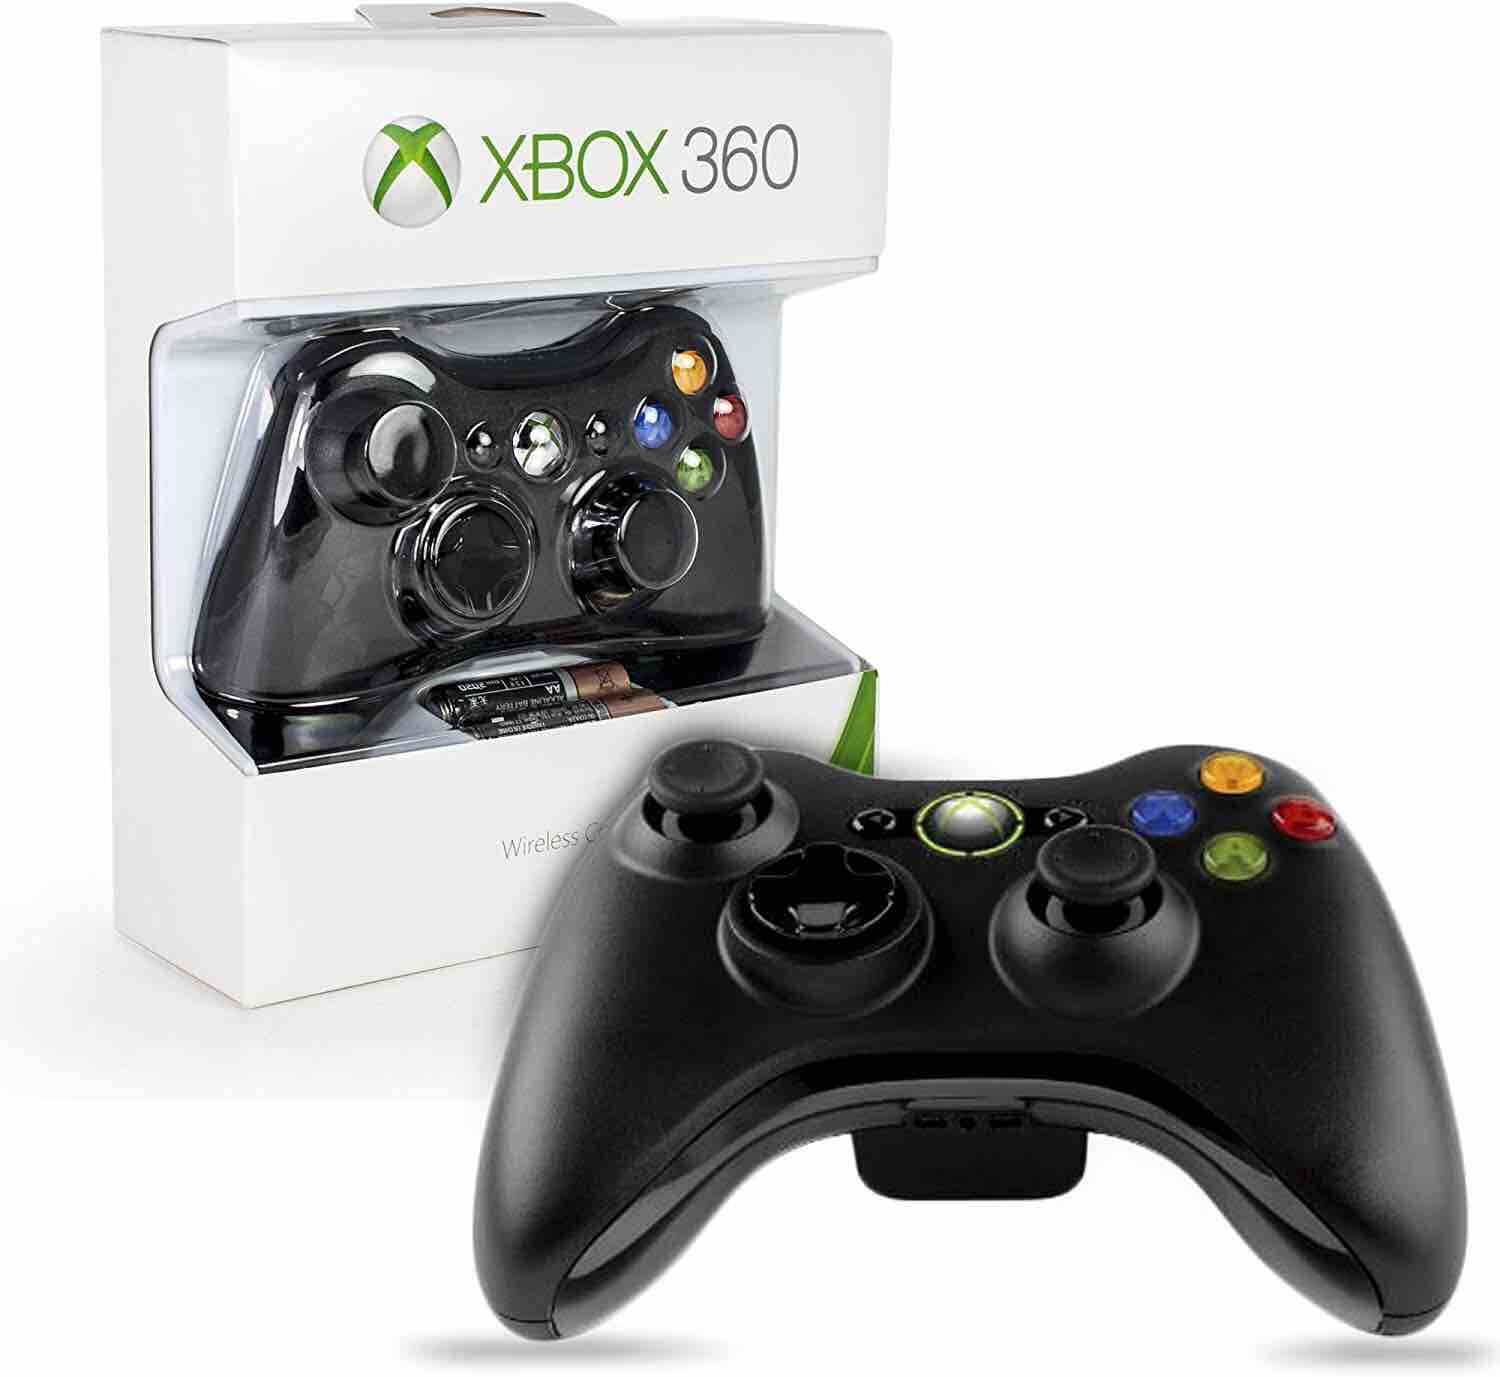 Купить джойстик для xbox 360. Джойстик Xbox 360 Wireless. Геймпад Xbox 360 беспроводной оригинал. Геймпад Xbox 360 беспроводной черный. Xbox 360 + 2 геймпада + коробка.